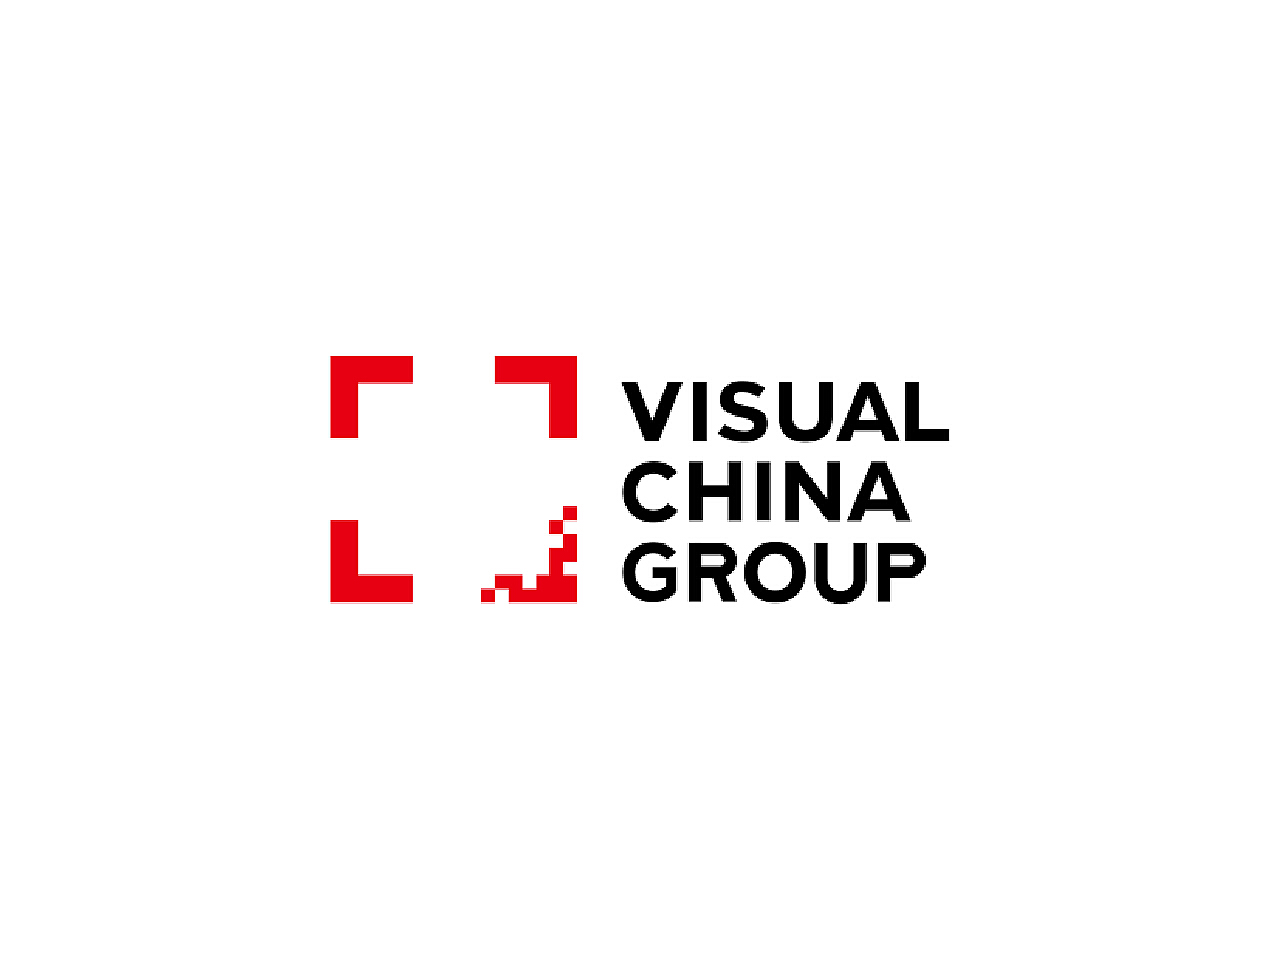 高清图片库_Getty images_视觉中国_Pexels_Pixabay正版图片 - Canva设计学院